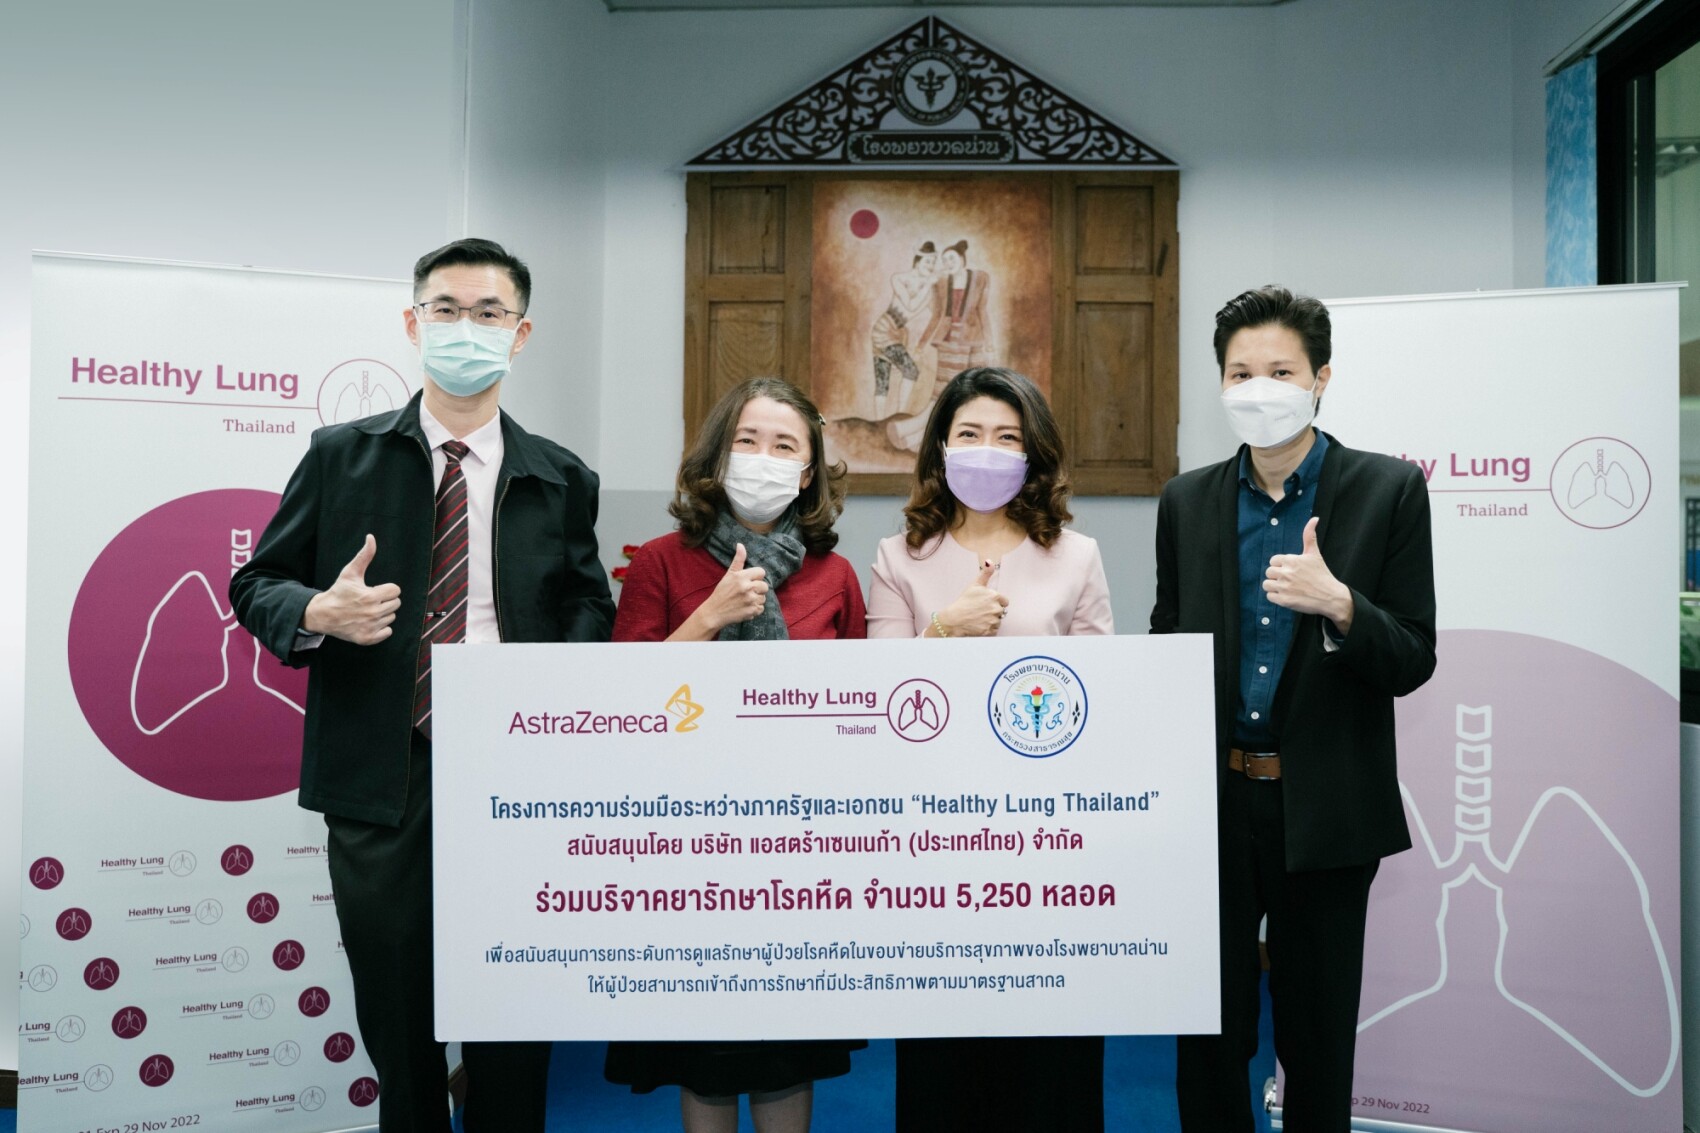 แอสตร้าเซนเนก้า ประเทศไทย บริจาคยารักษาโรคหืดสำหรับการดูแลรักษาผู้ป่วยในขอบข่ายบริการสุขภาพของโรงพยาบาลน่าน เพื่อสนับสนุนการเข้าถึงการรักษาอย่างมีประสิทธิภาพ